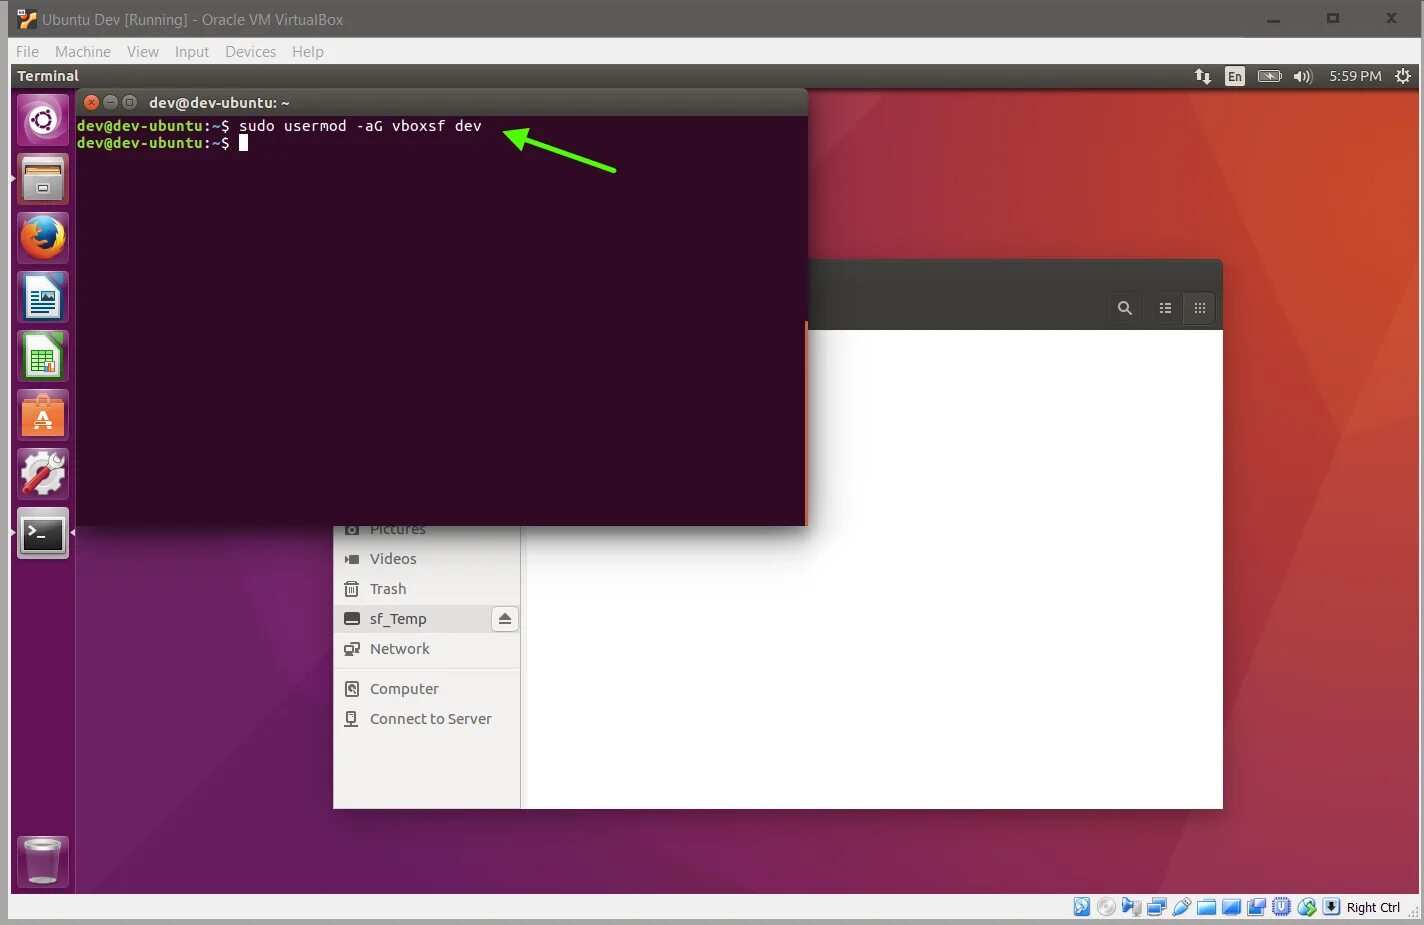 Usermod linux. Как сменить пользователя в Ubuntu. VIRTUALBOX Running. При установке Ubuntu на VIRTUALBOX черный экран. Что делать если не загружается Ubuntu.